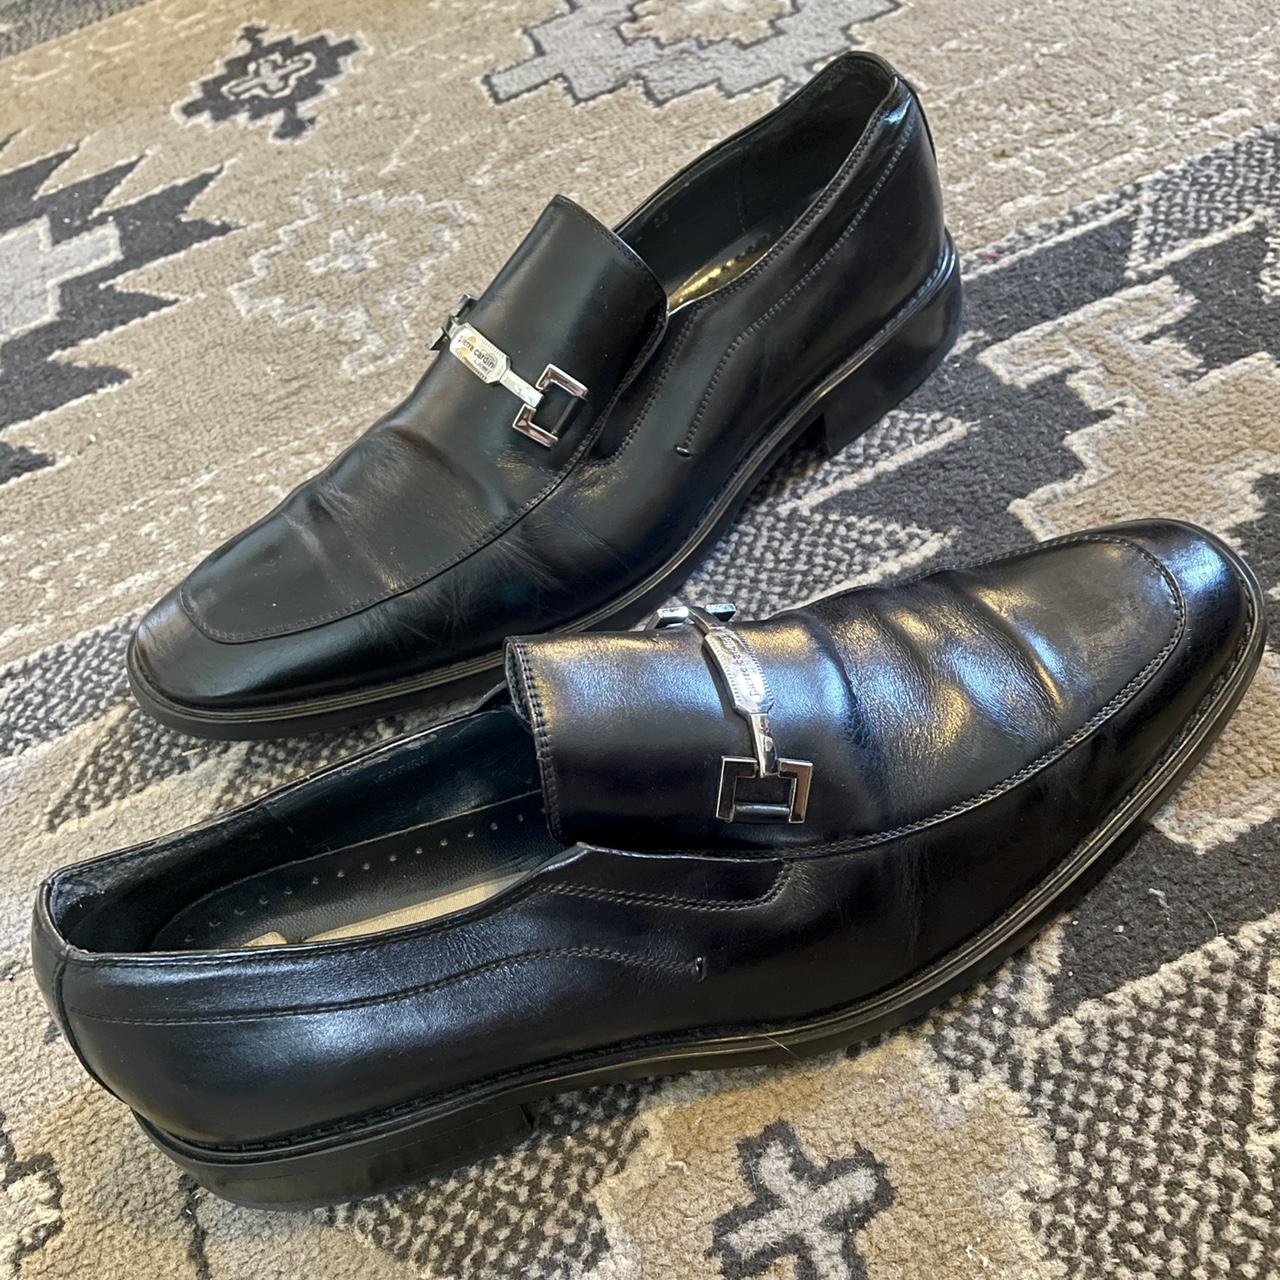 Vintage Leather Pierre Cardin Shoes Black Size 10 US... - Depop